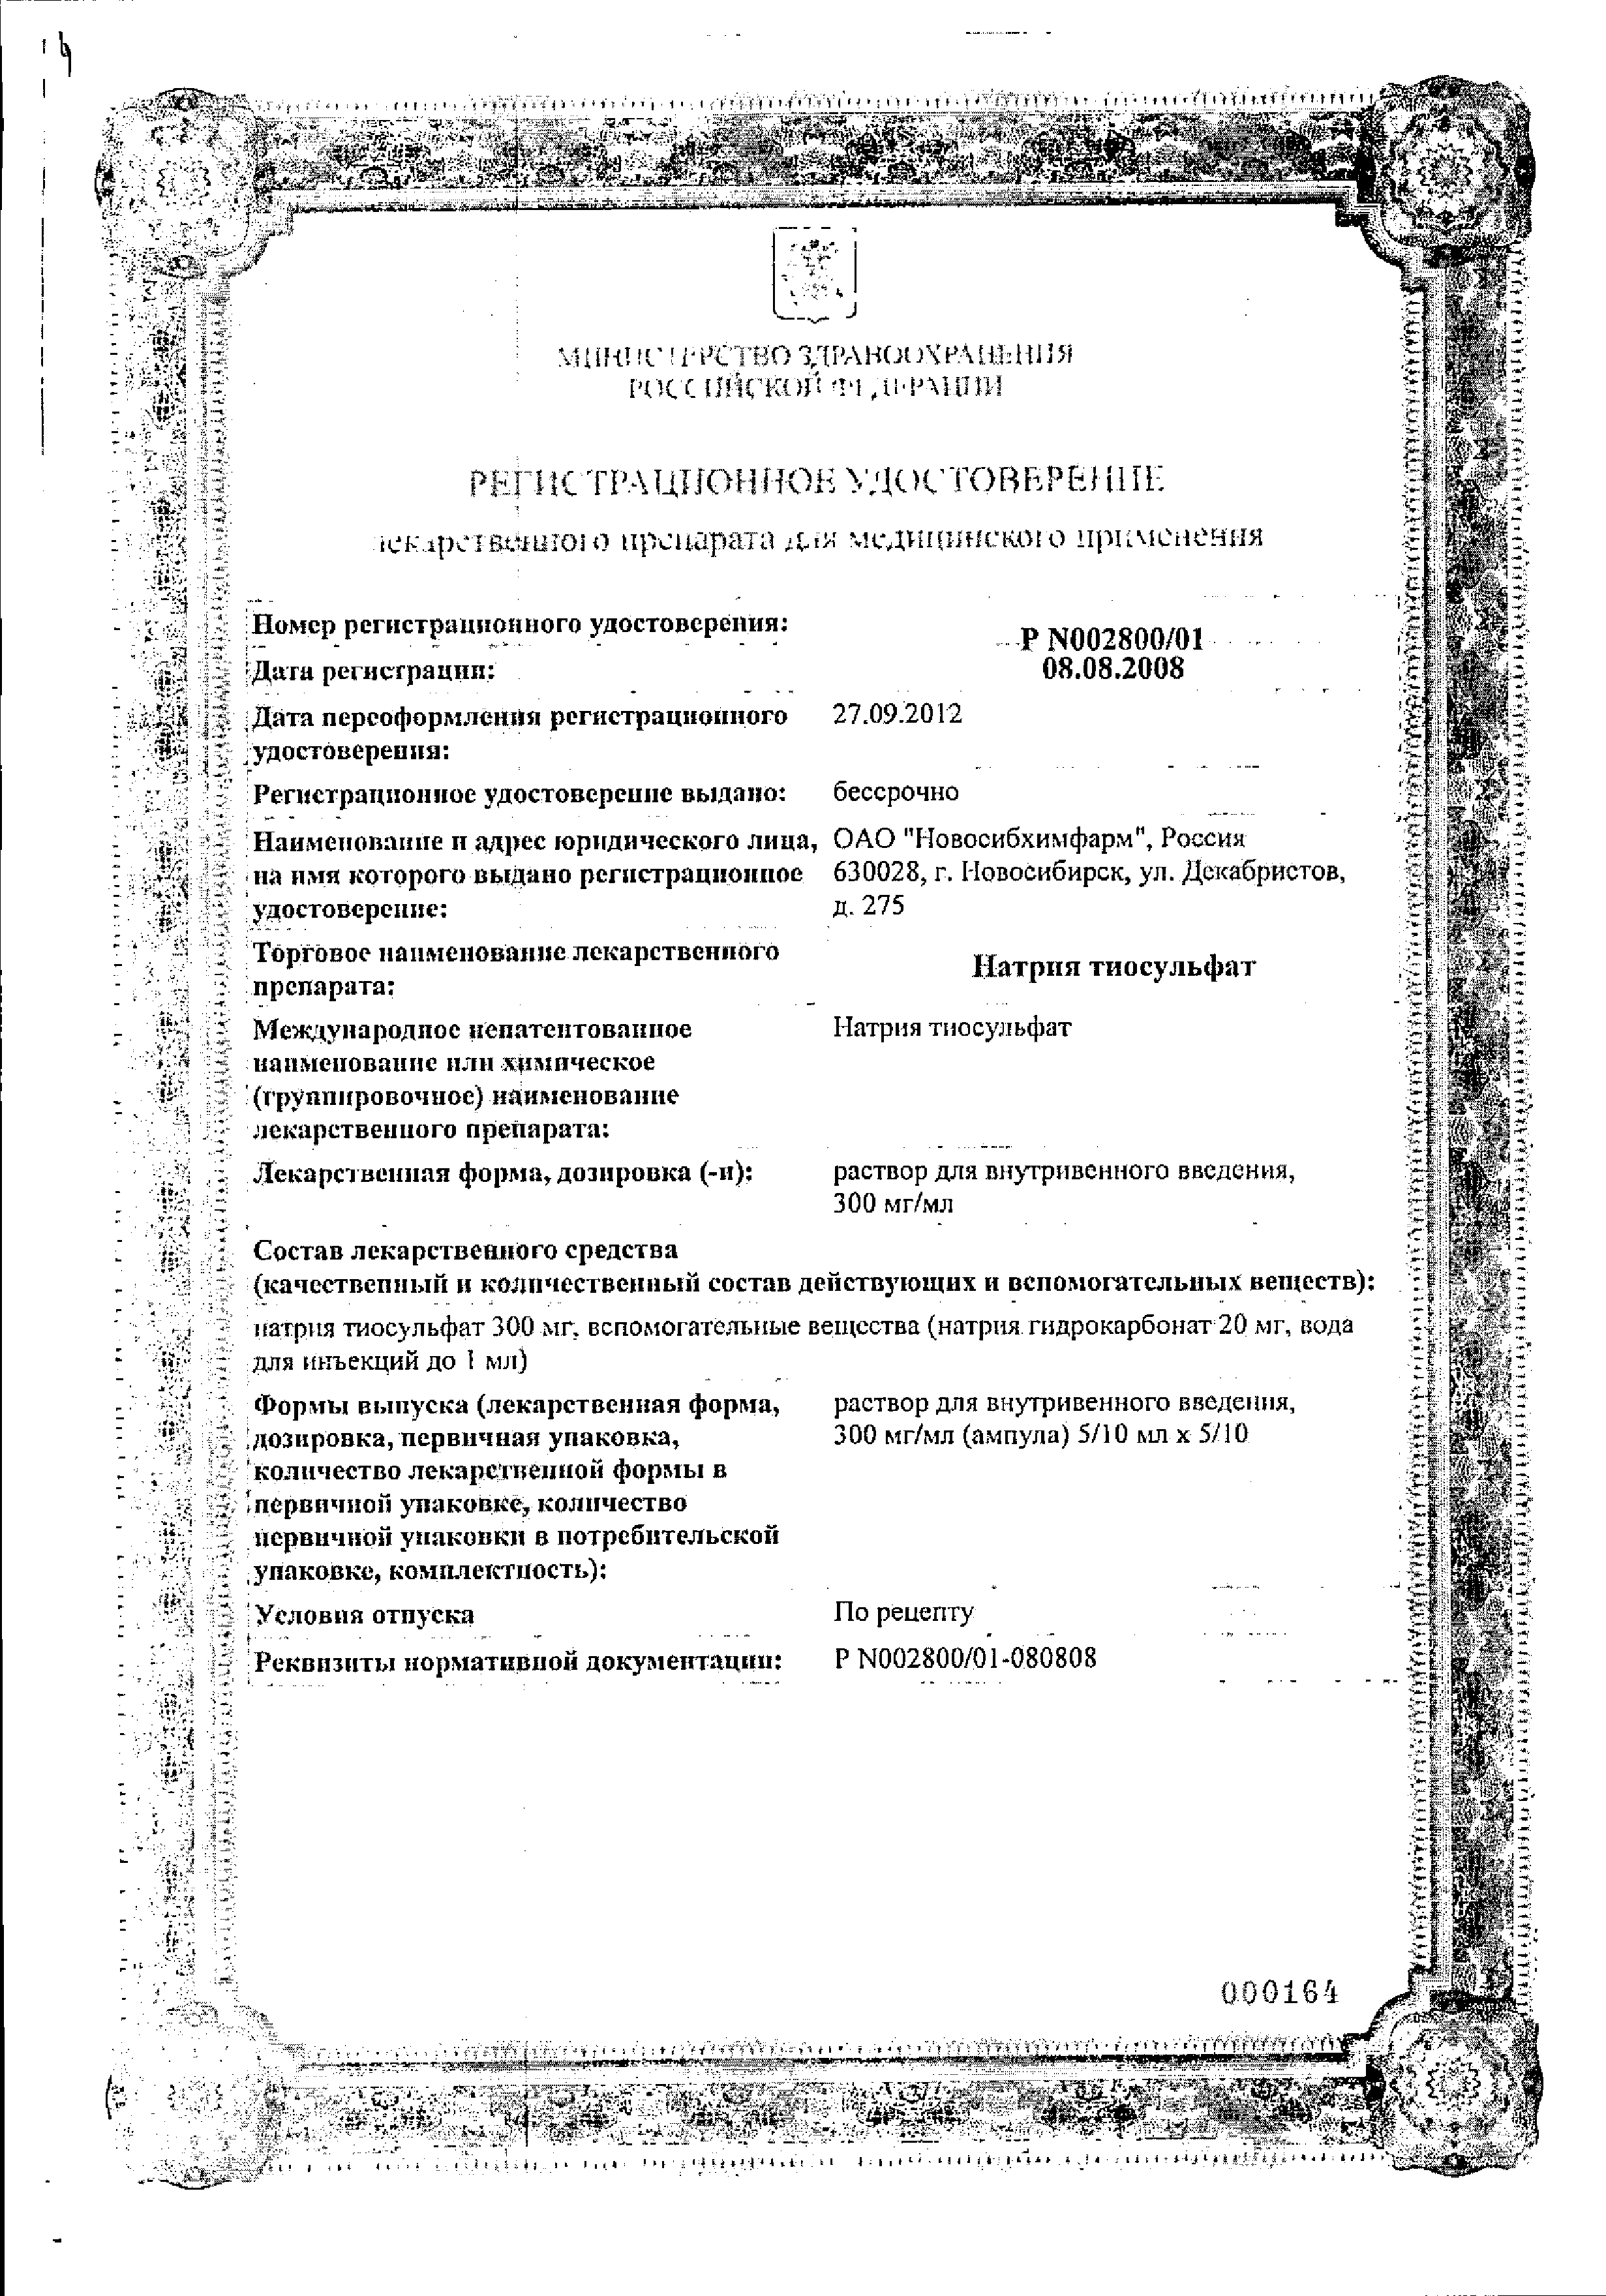 Натрия тиосульфат сертификат